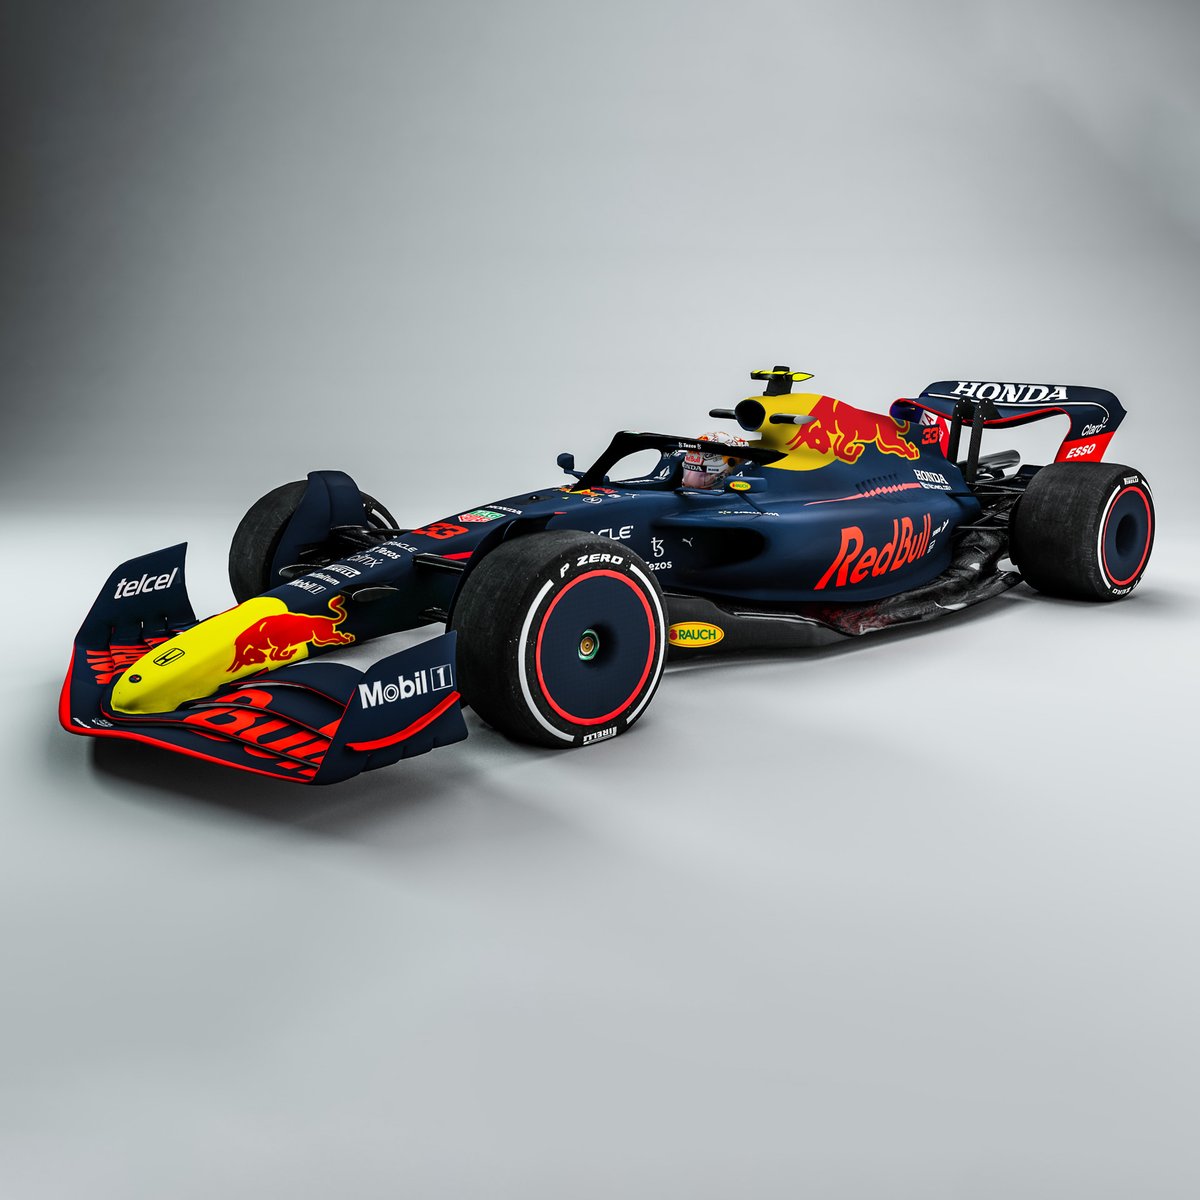 Pásale a ver todos los autos con el nuevo diseño para la temporada 2022 de Fórmula 1